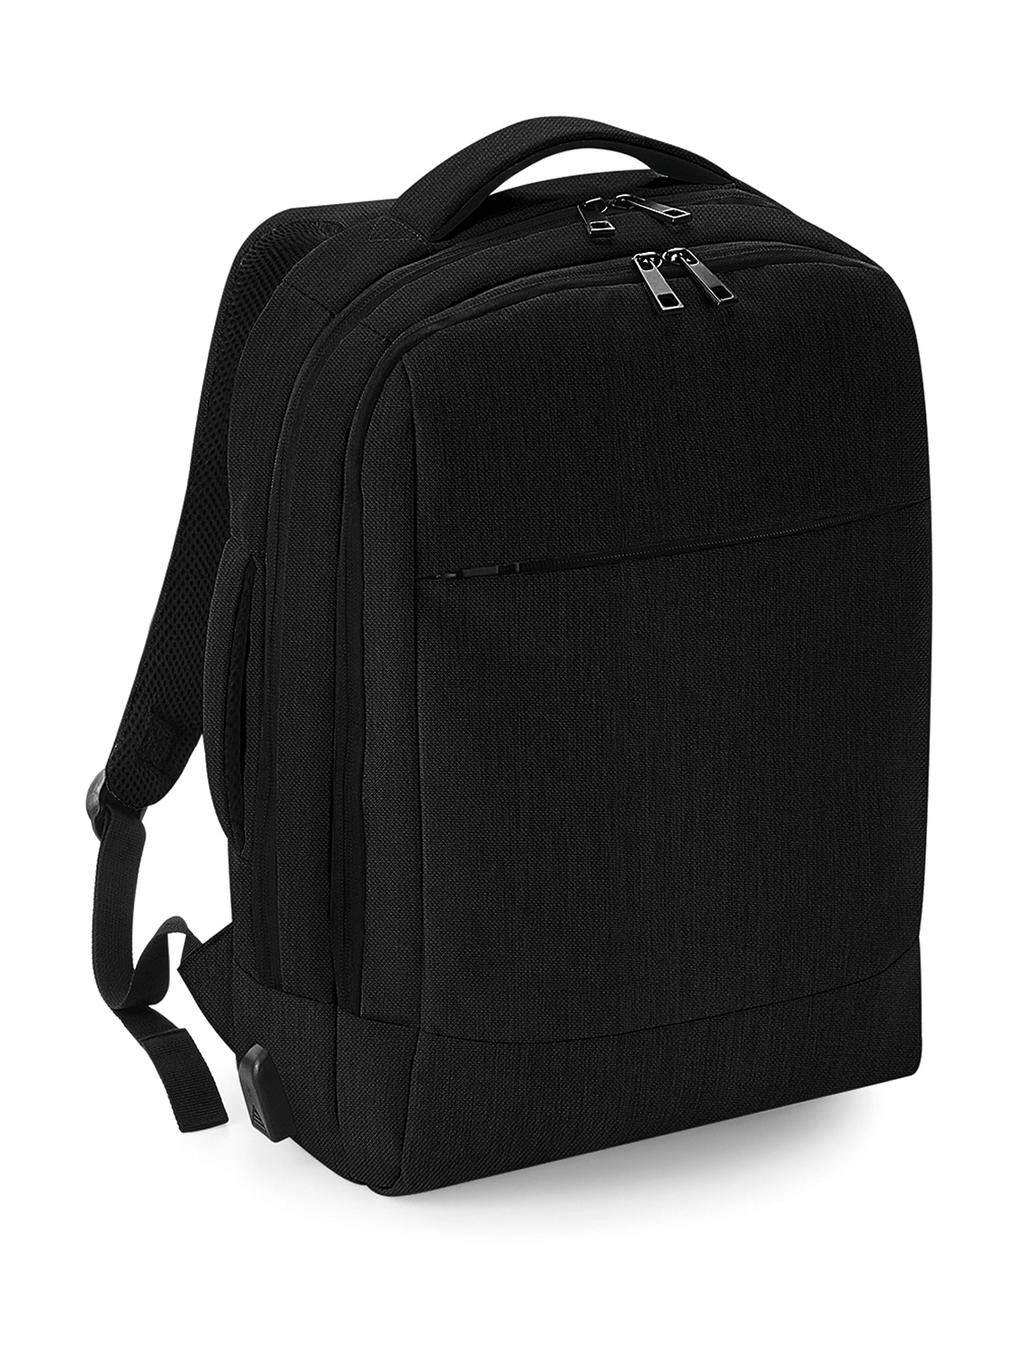 Q-Tech Charge Convertible Backpack zum Besticken und Bedrucken in der Farbe Black mit Ihren Logo, Schriftzug oder Motiv.